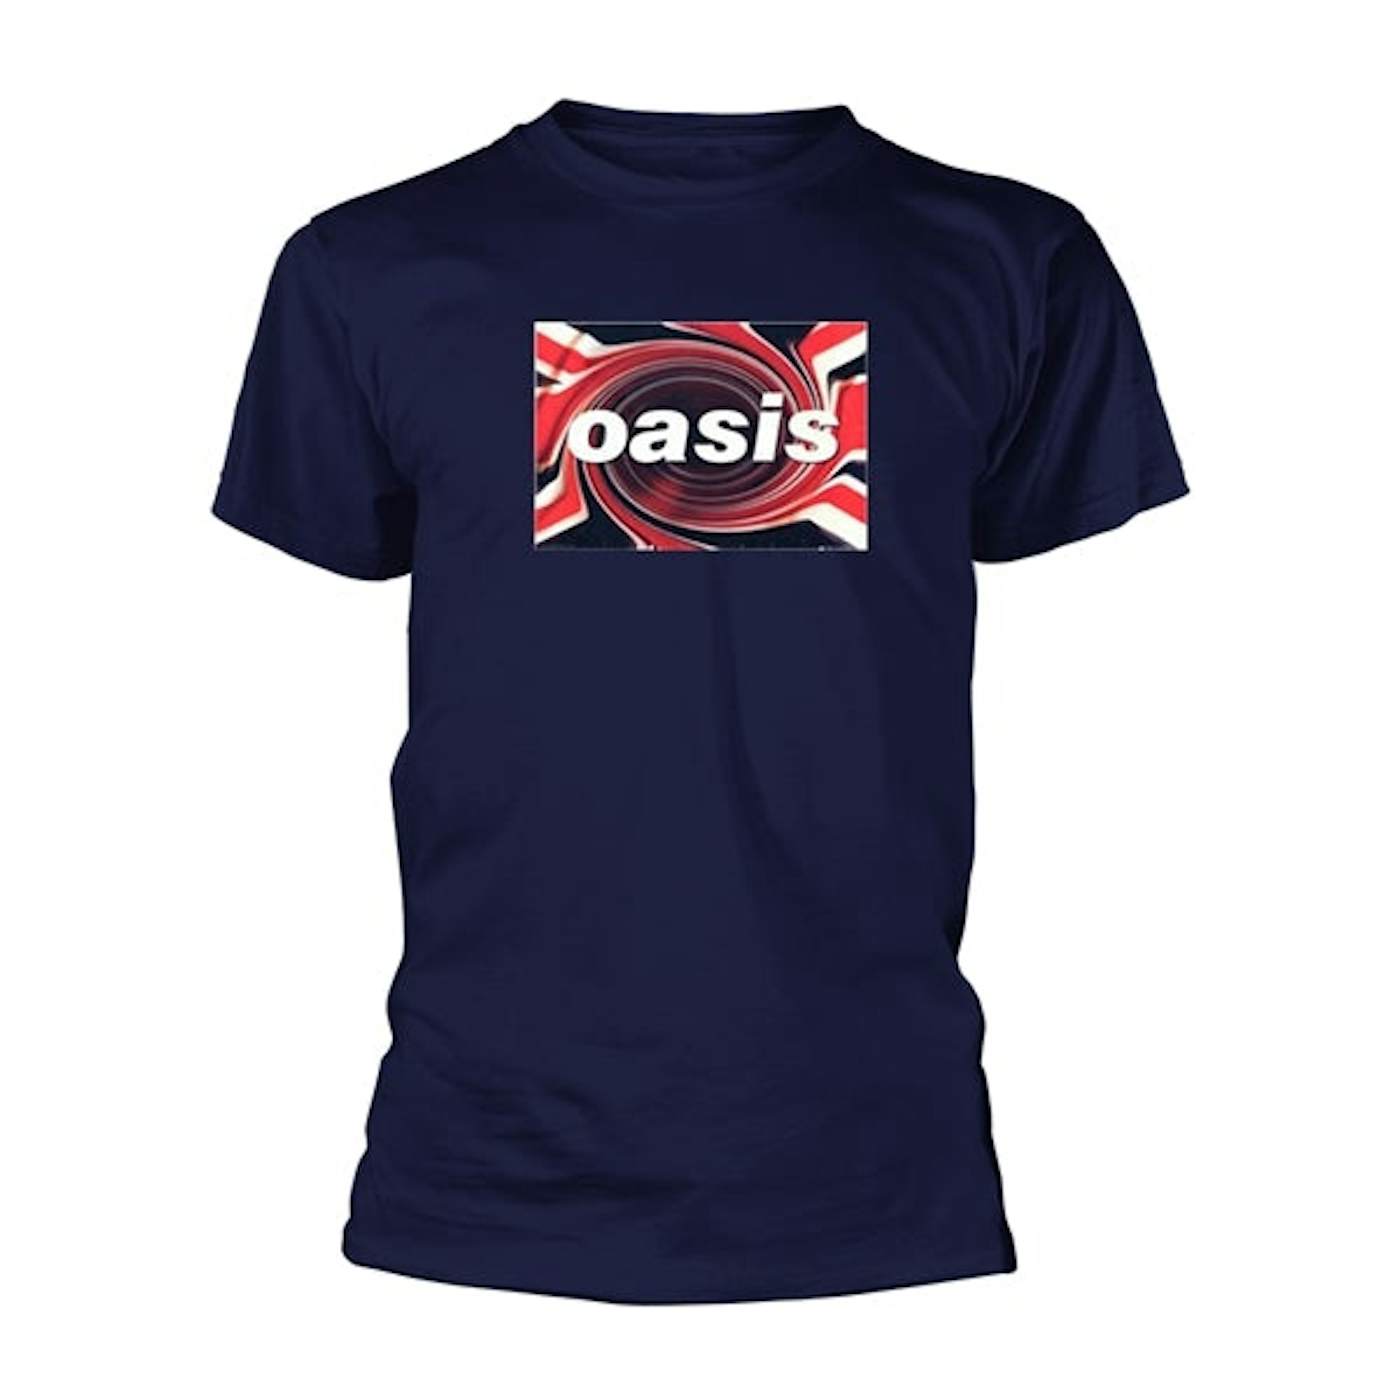 Oasis T Shirt - Union Jack